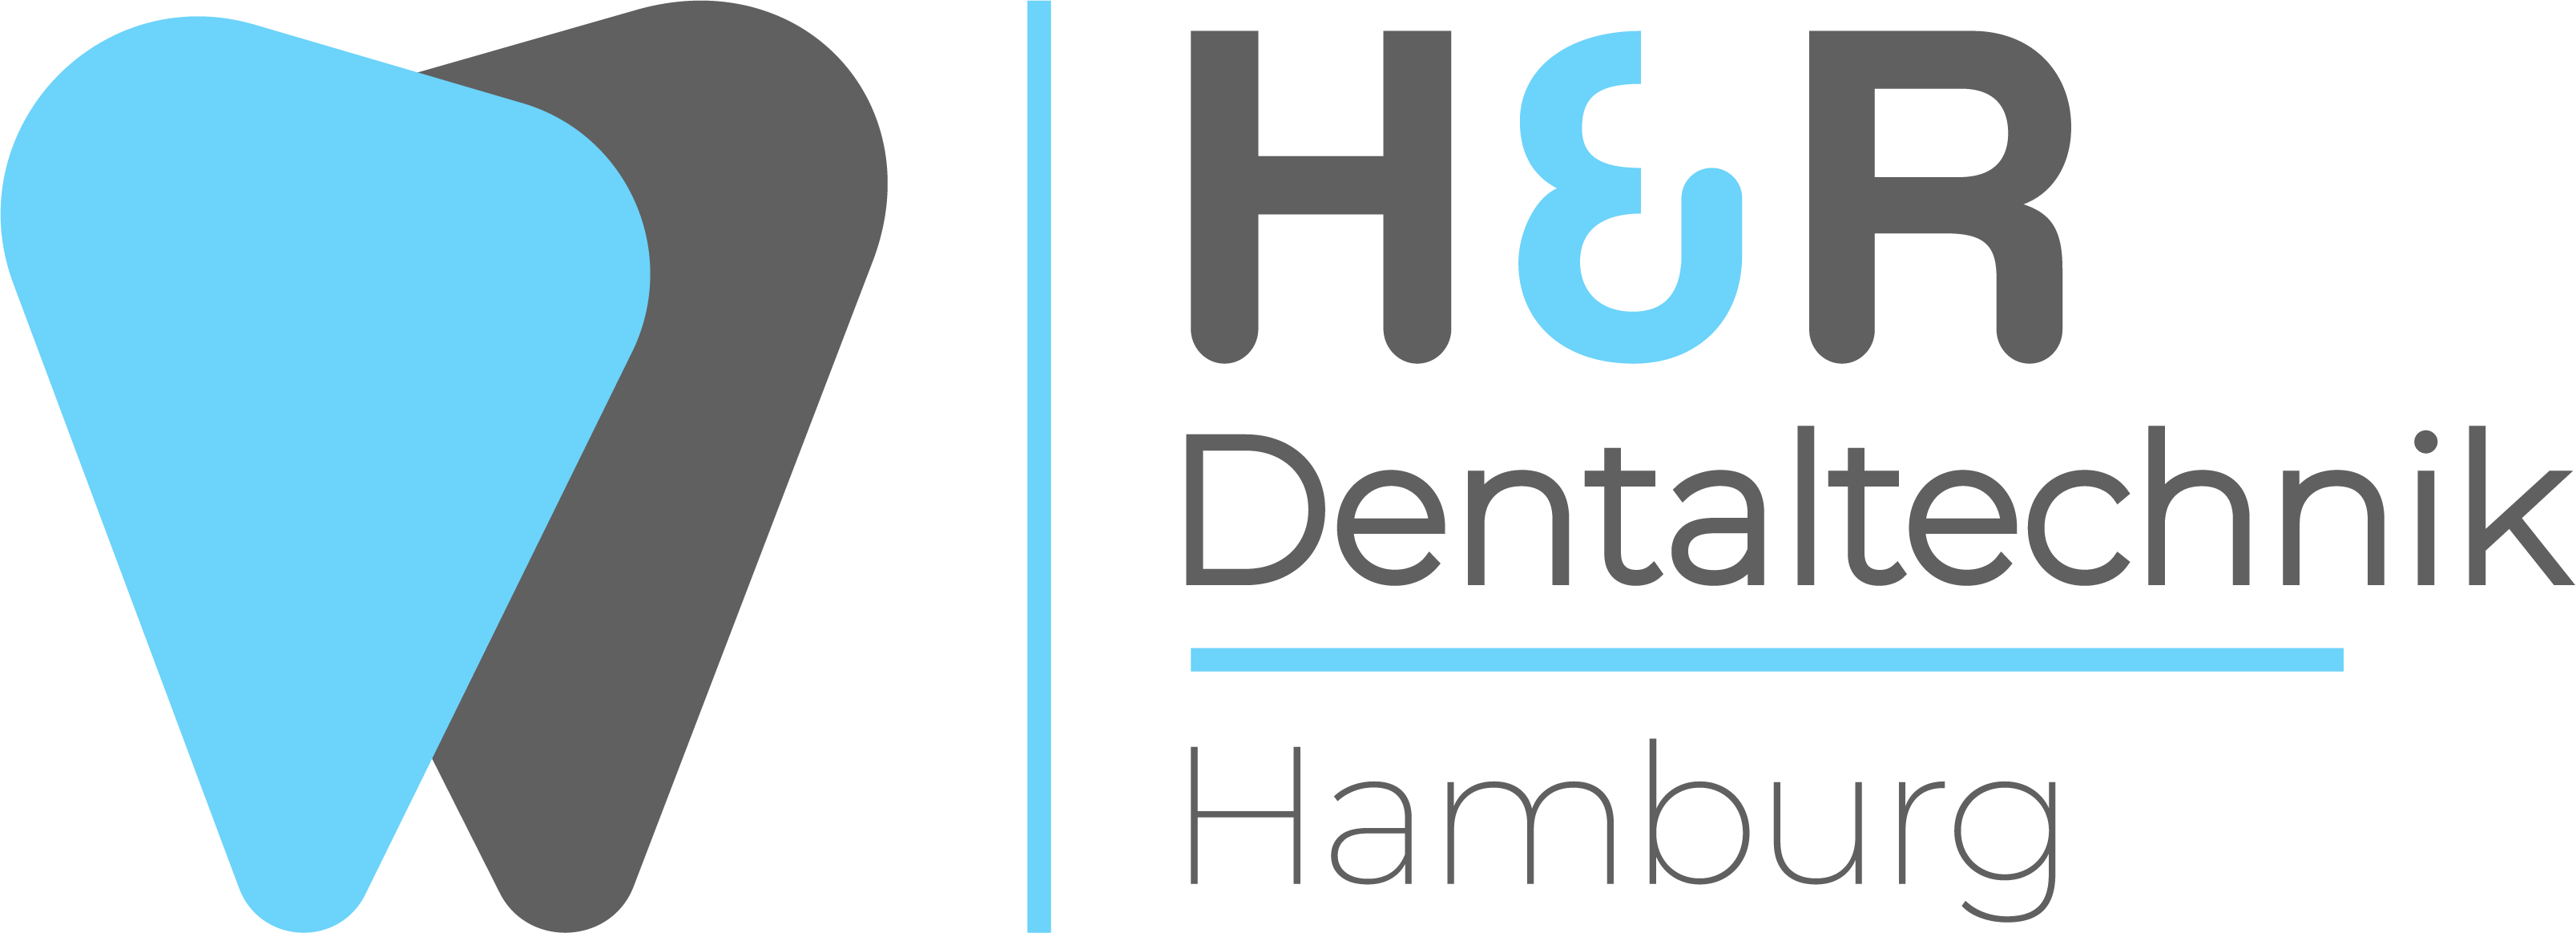 H & R Dentaltechnik GmbH